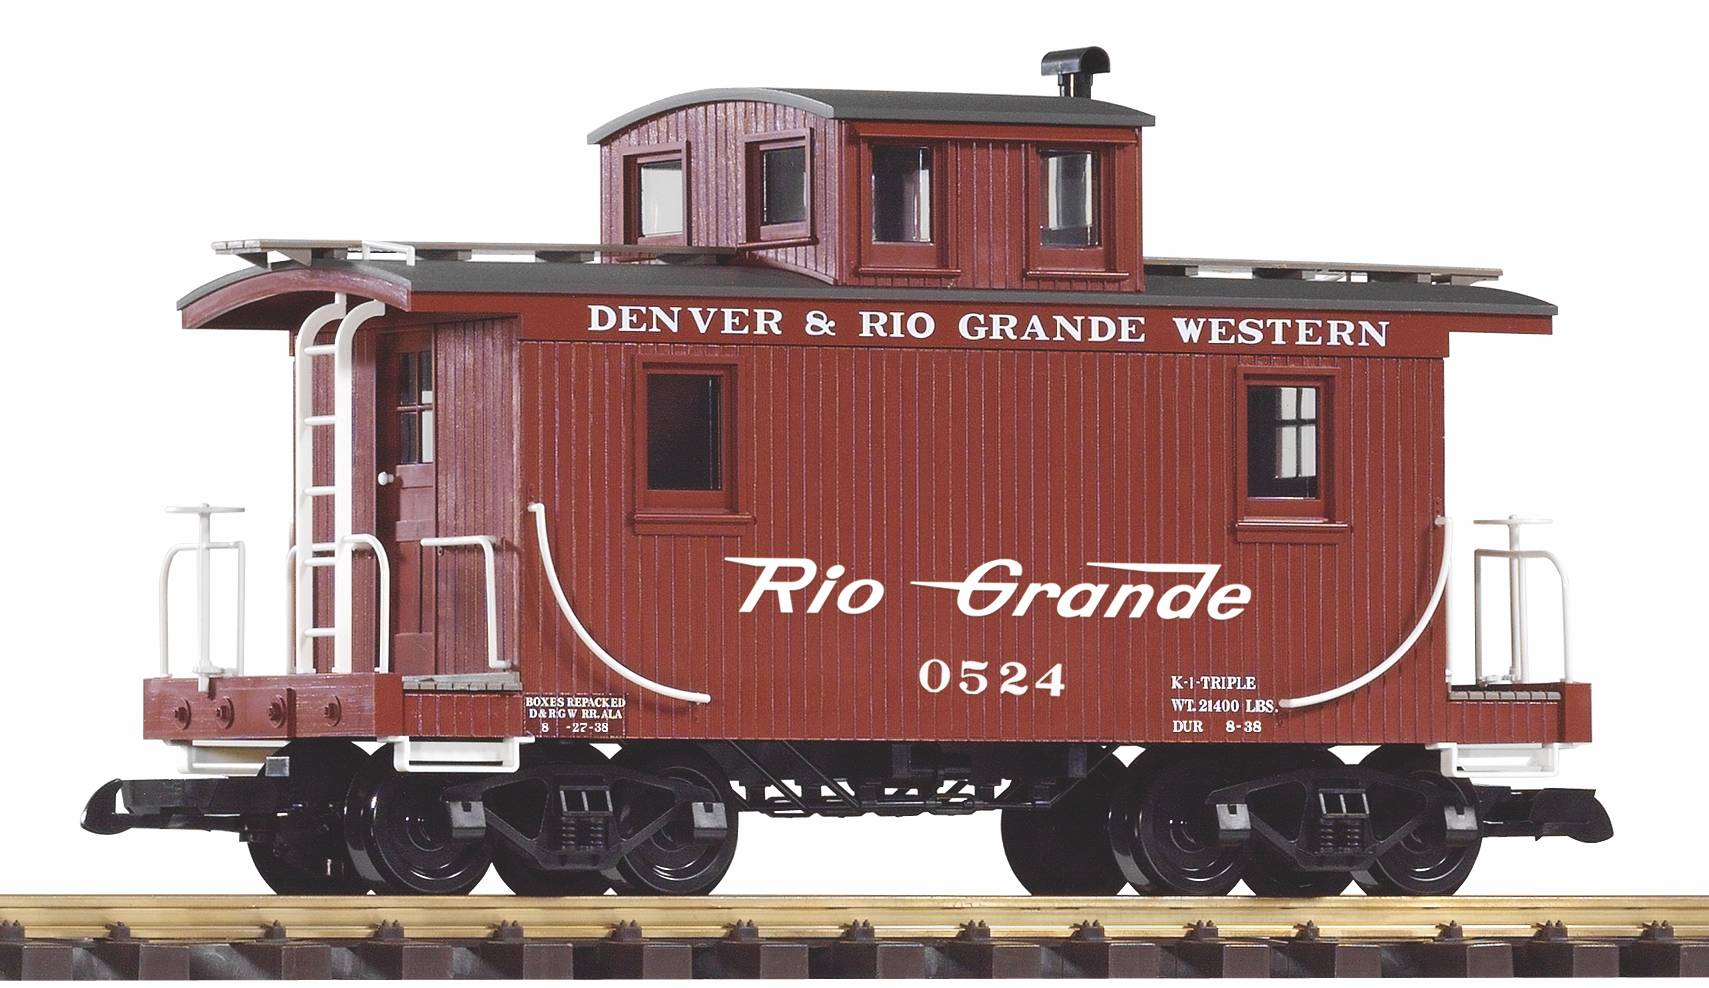 PIKO Art. Nr. 38947 - G Güterzugbegleitwagen, Denver & Rio Grande Western. 